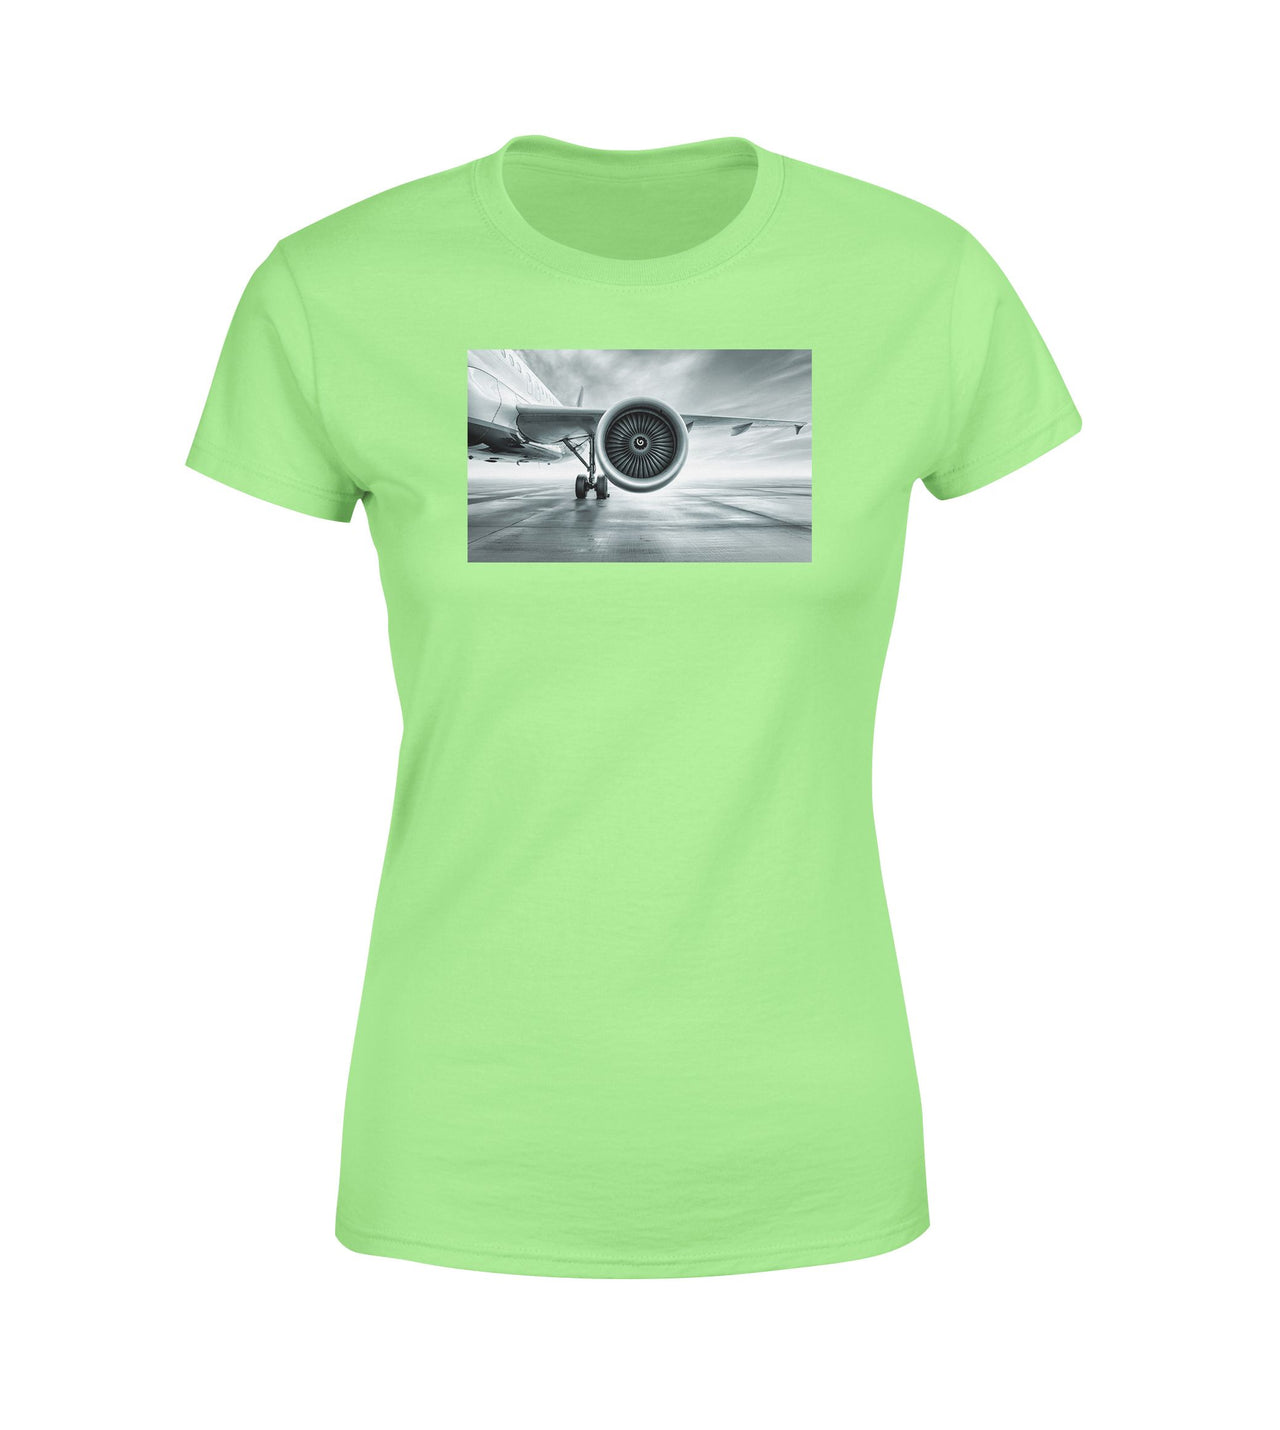 Super Cool Airliner Jet Engine Designed Women T-Shirts